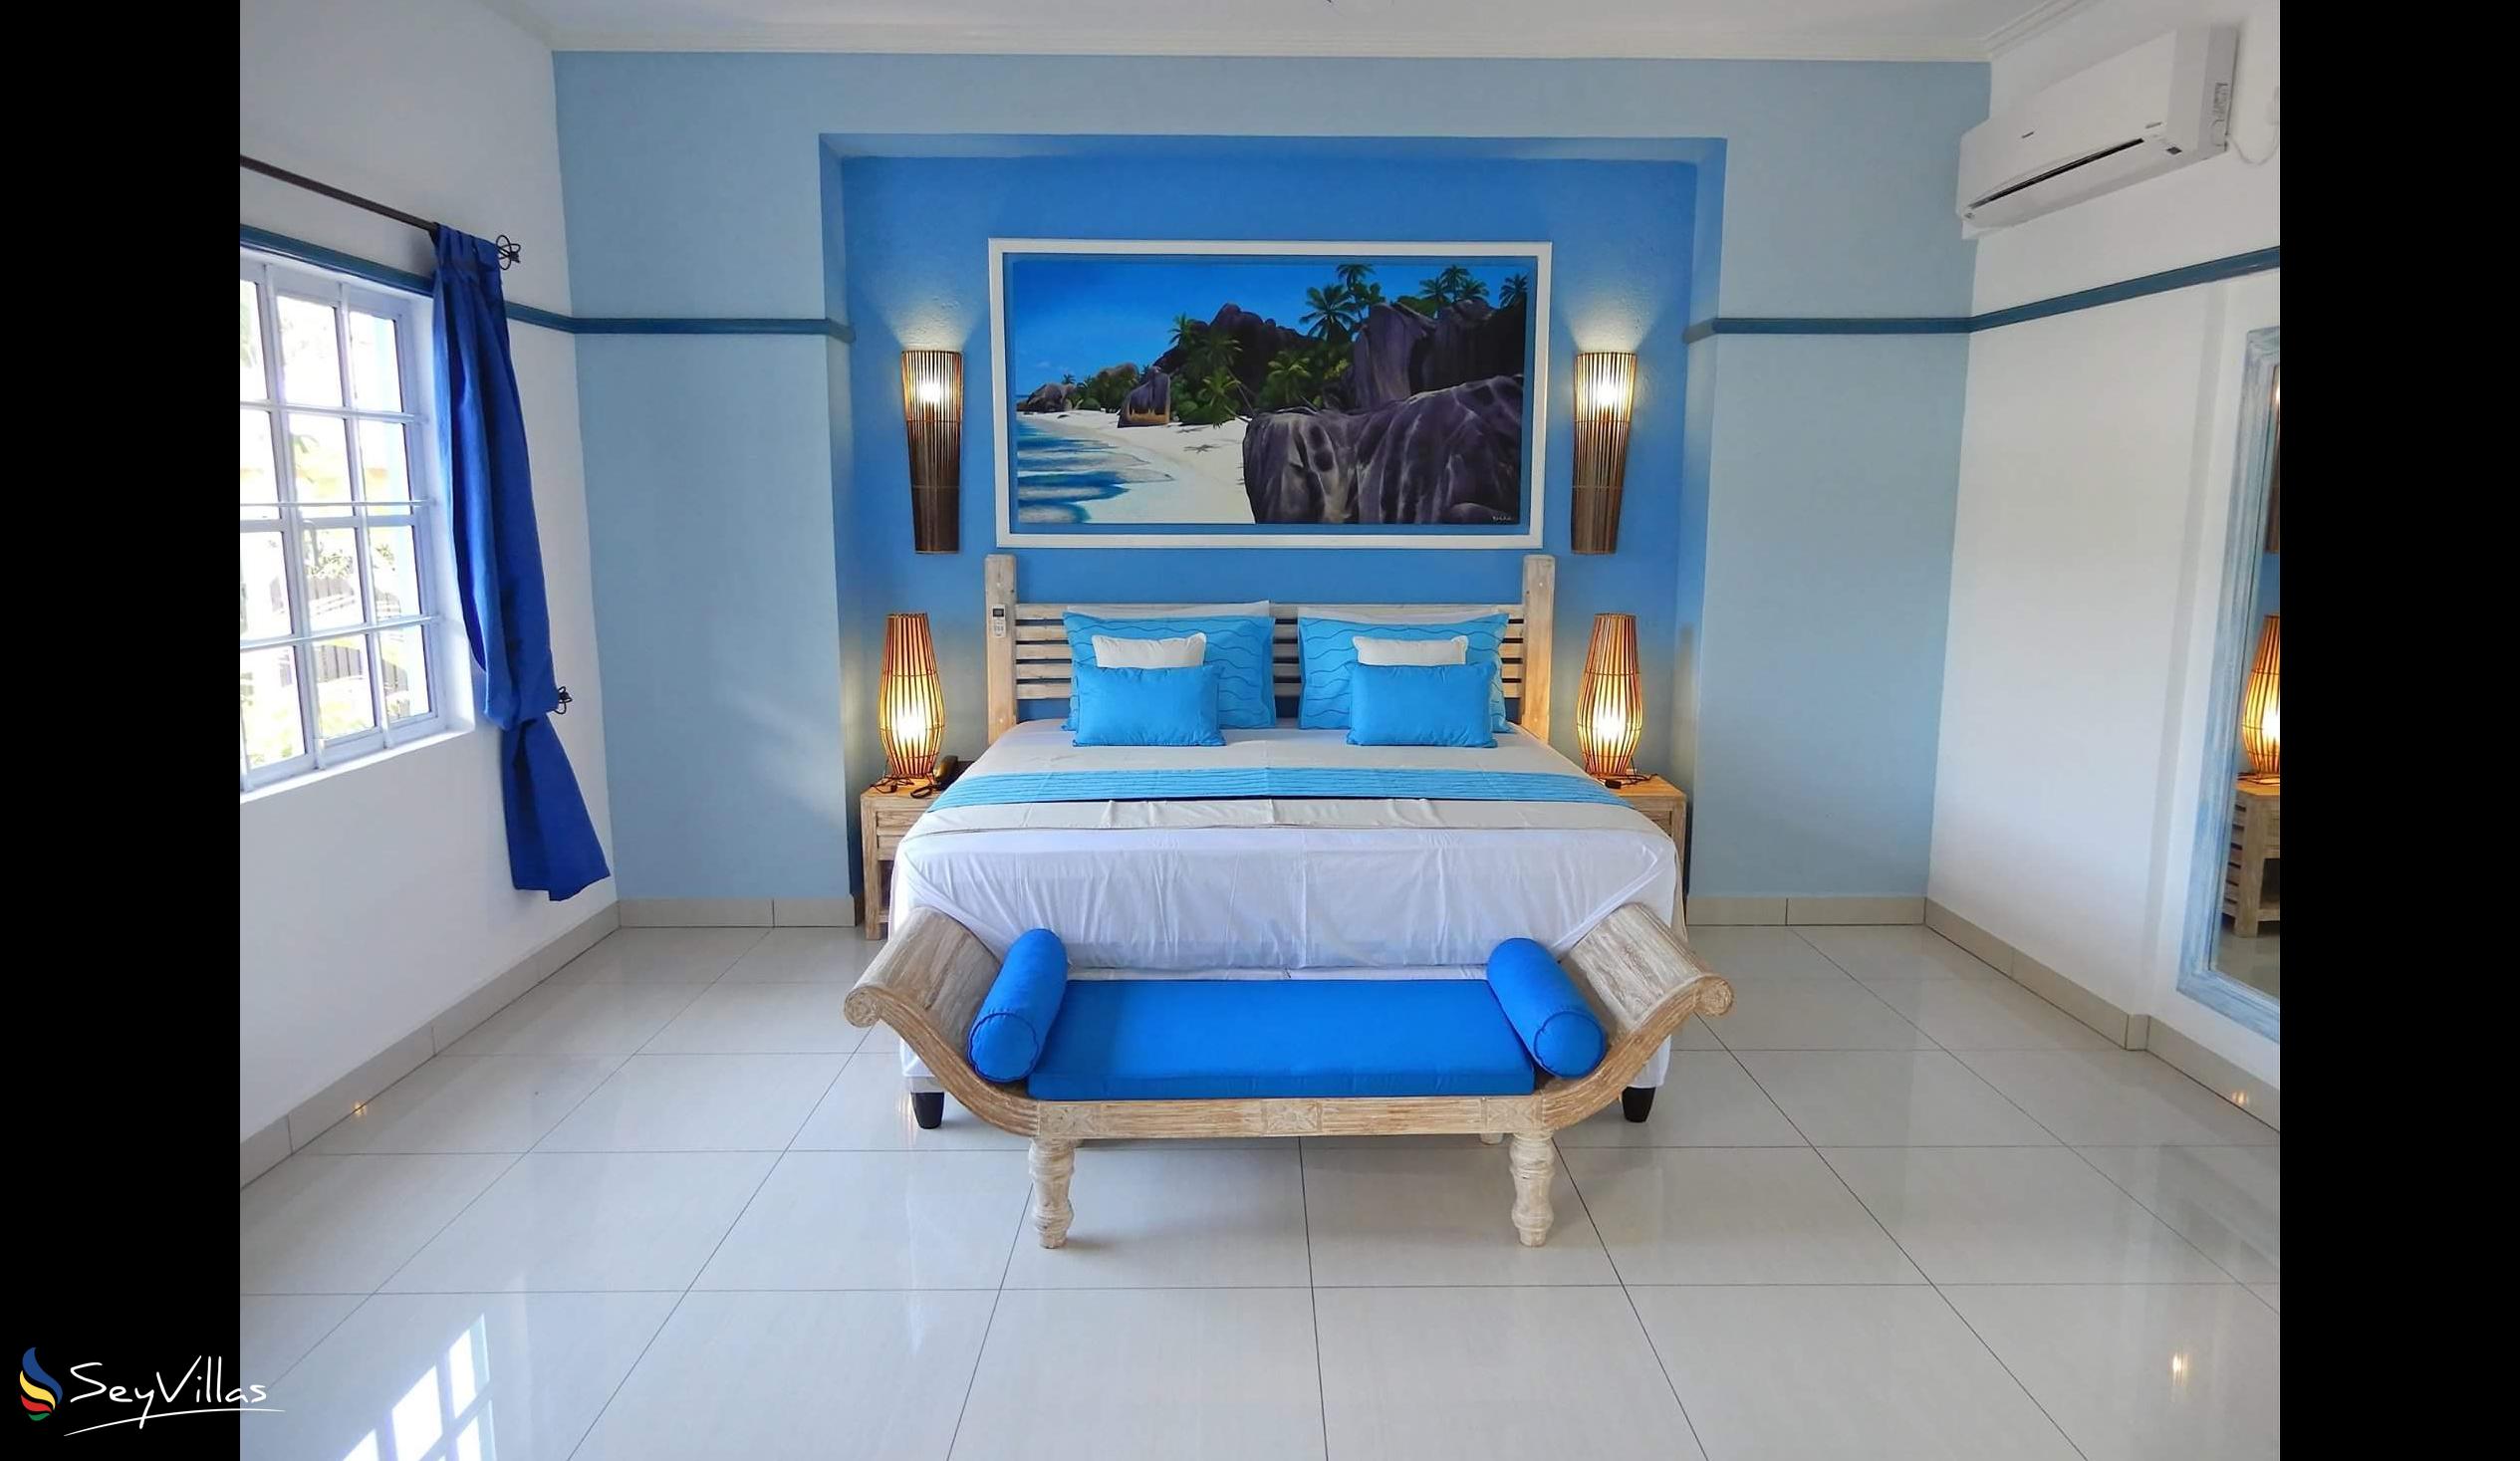 Foto 58: Villa Charme De L'ile - Appartement de luxe avec vue sur la piscine - La Digue (Seychelles)